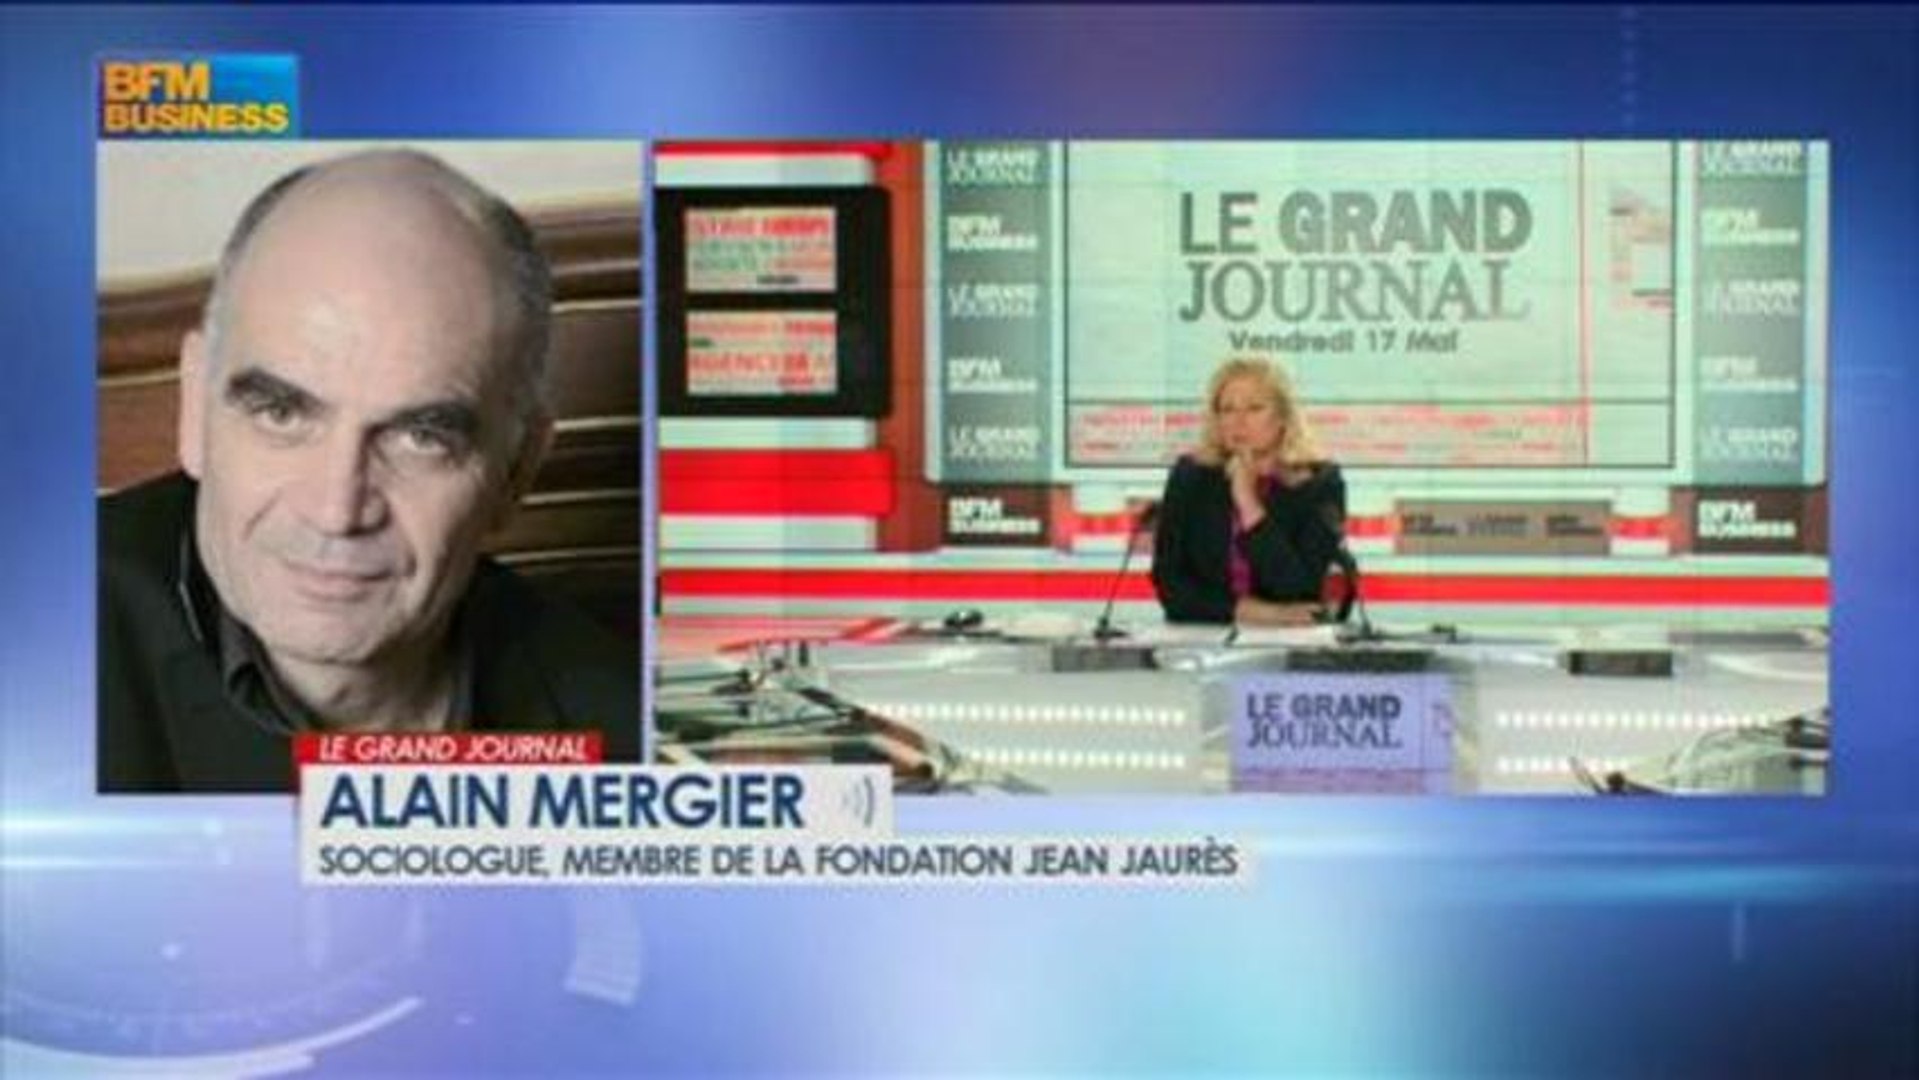 Alain Mergier, sociologue, membre de la Fondation Jean Jaurès dans Le Grand  Journal - 17 mai 3/4 - Vidéo Dailymotion